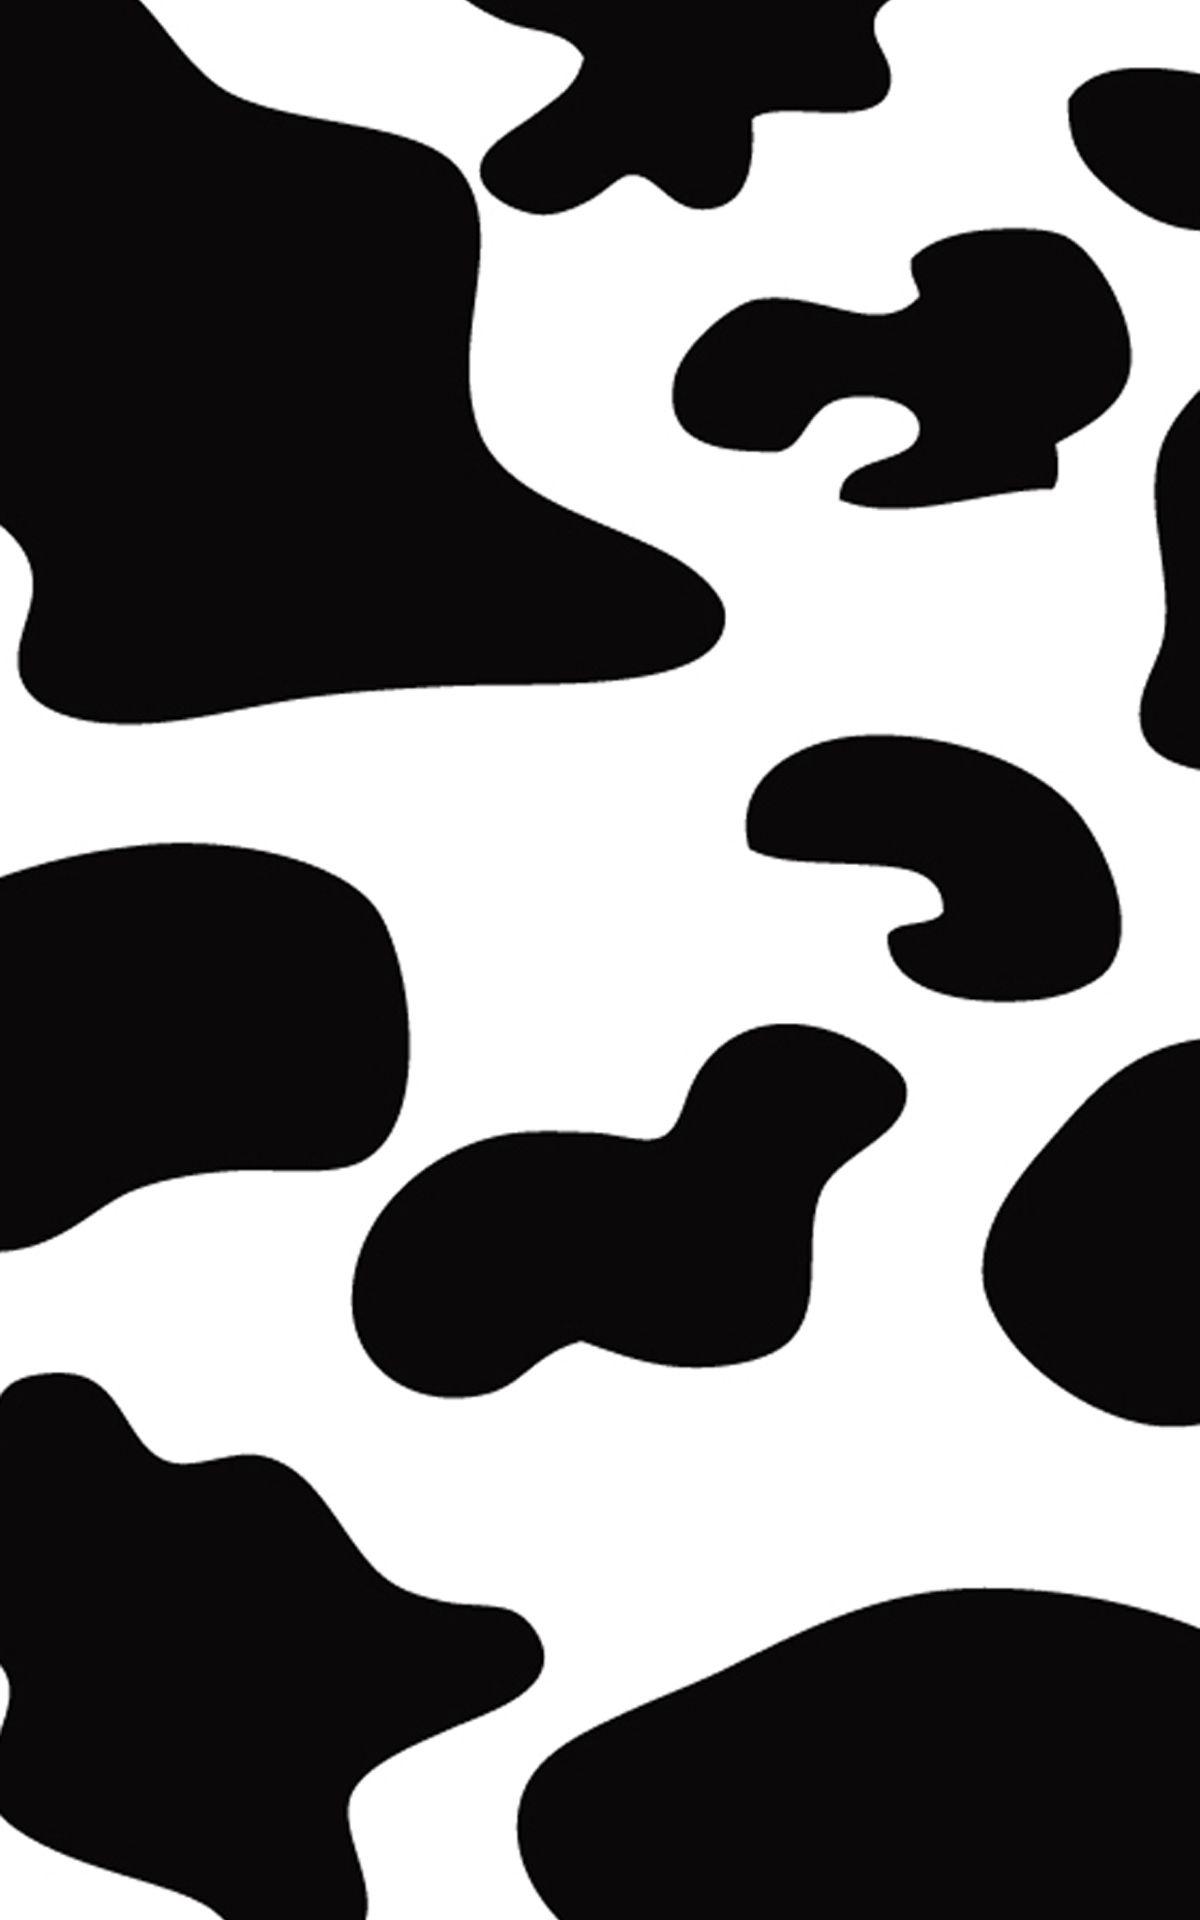 Cow Print Wallpaper Res 1200x1920px. Cow print wallpaper, Print